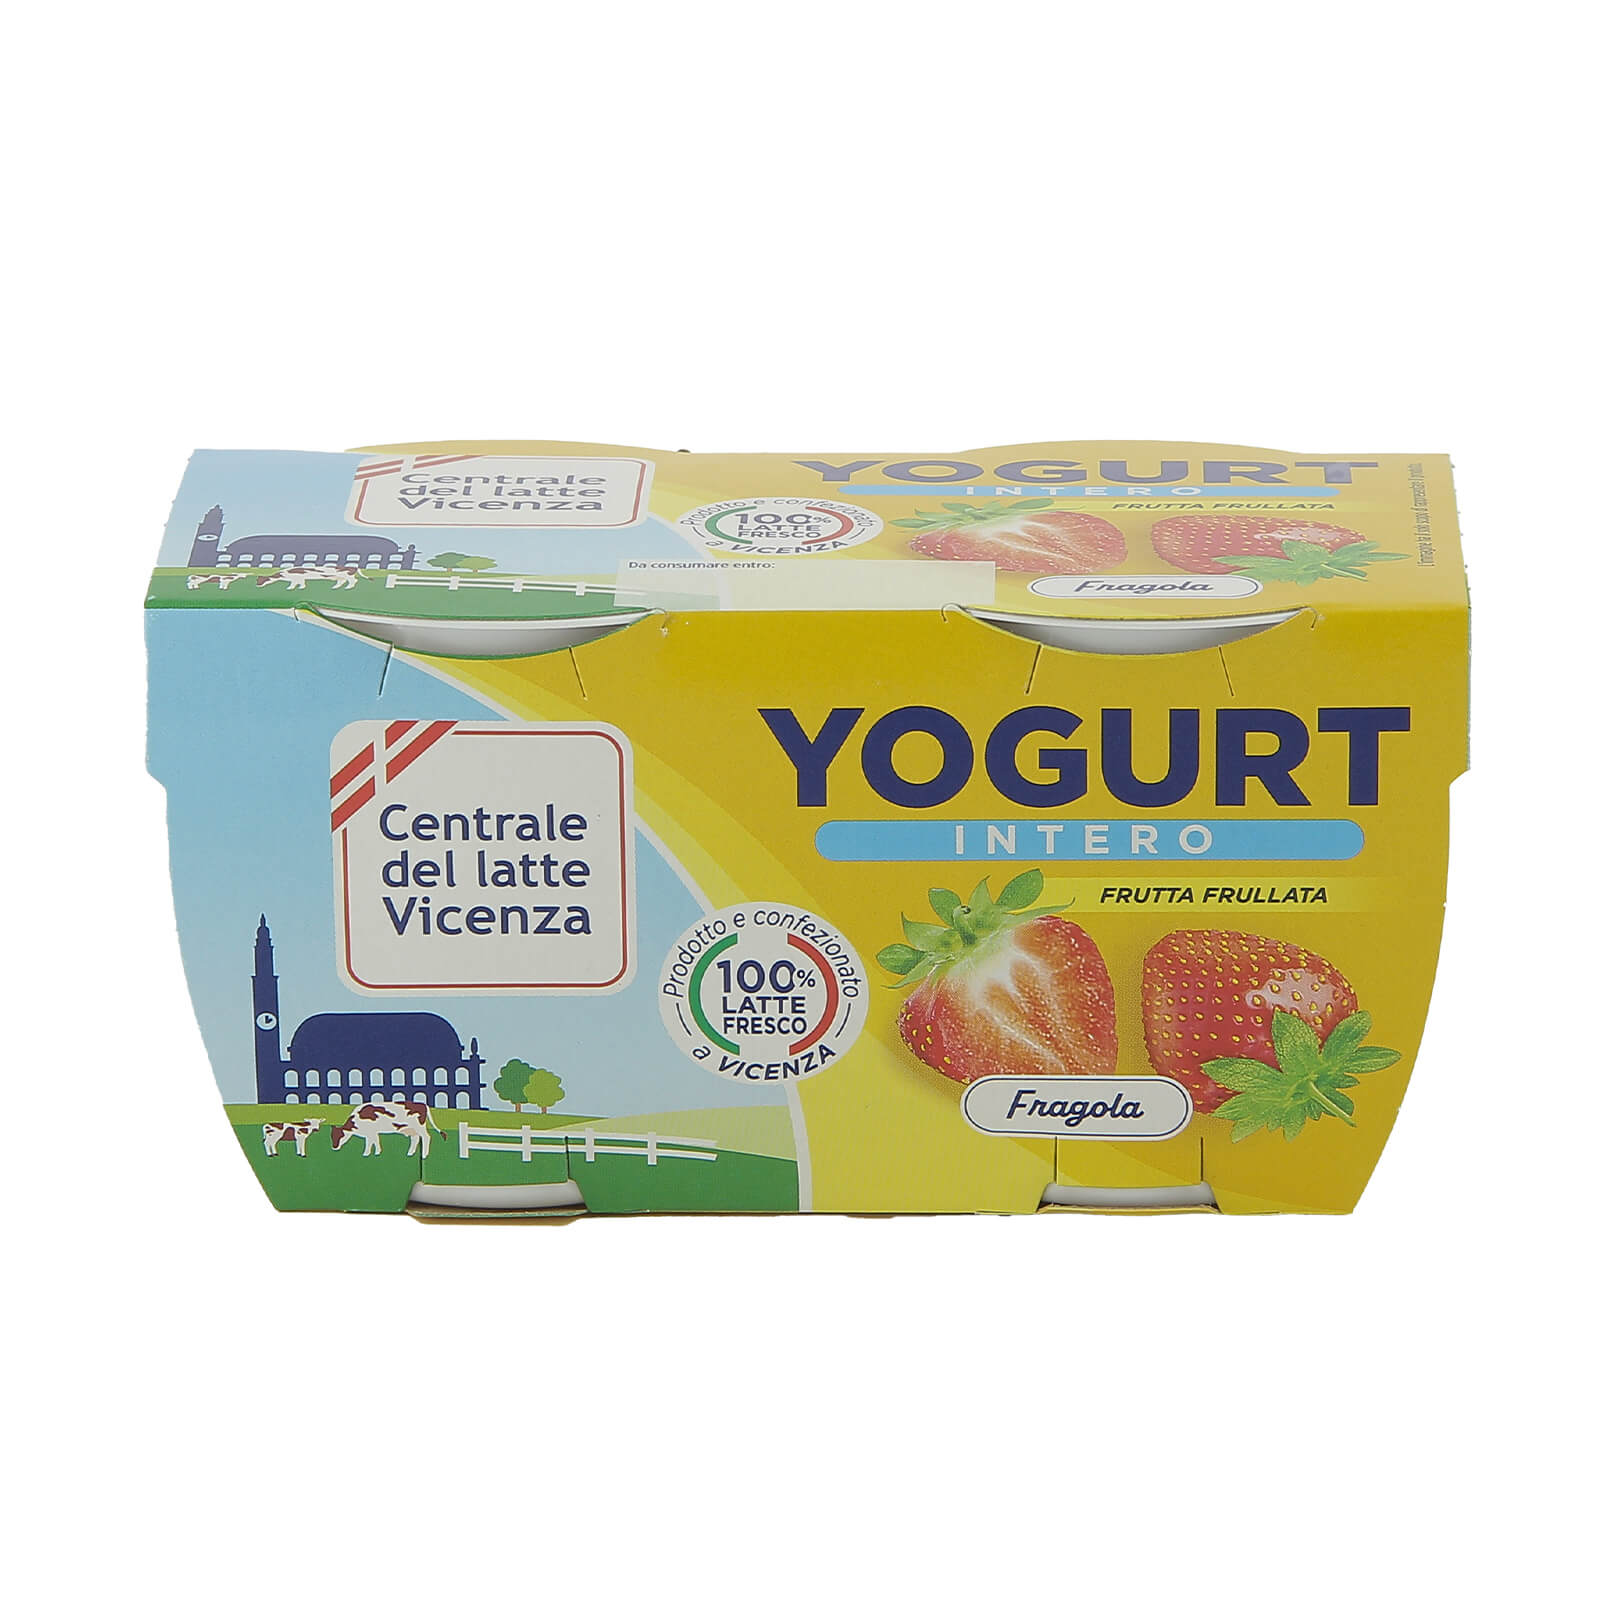 Yogurt Intero Vicenza - Fragola - Centrale del Latte di Vicenza